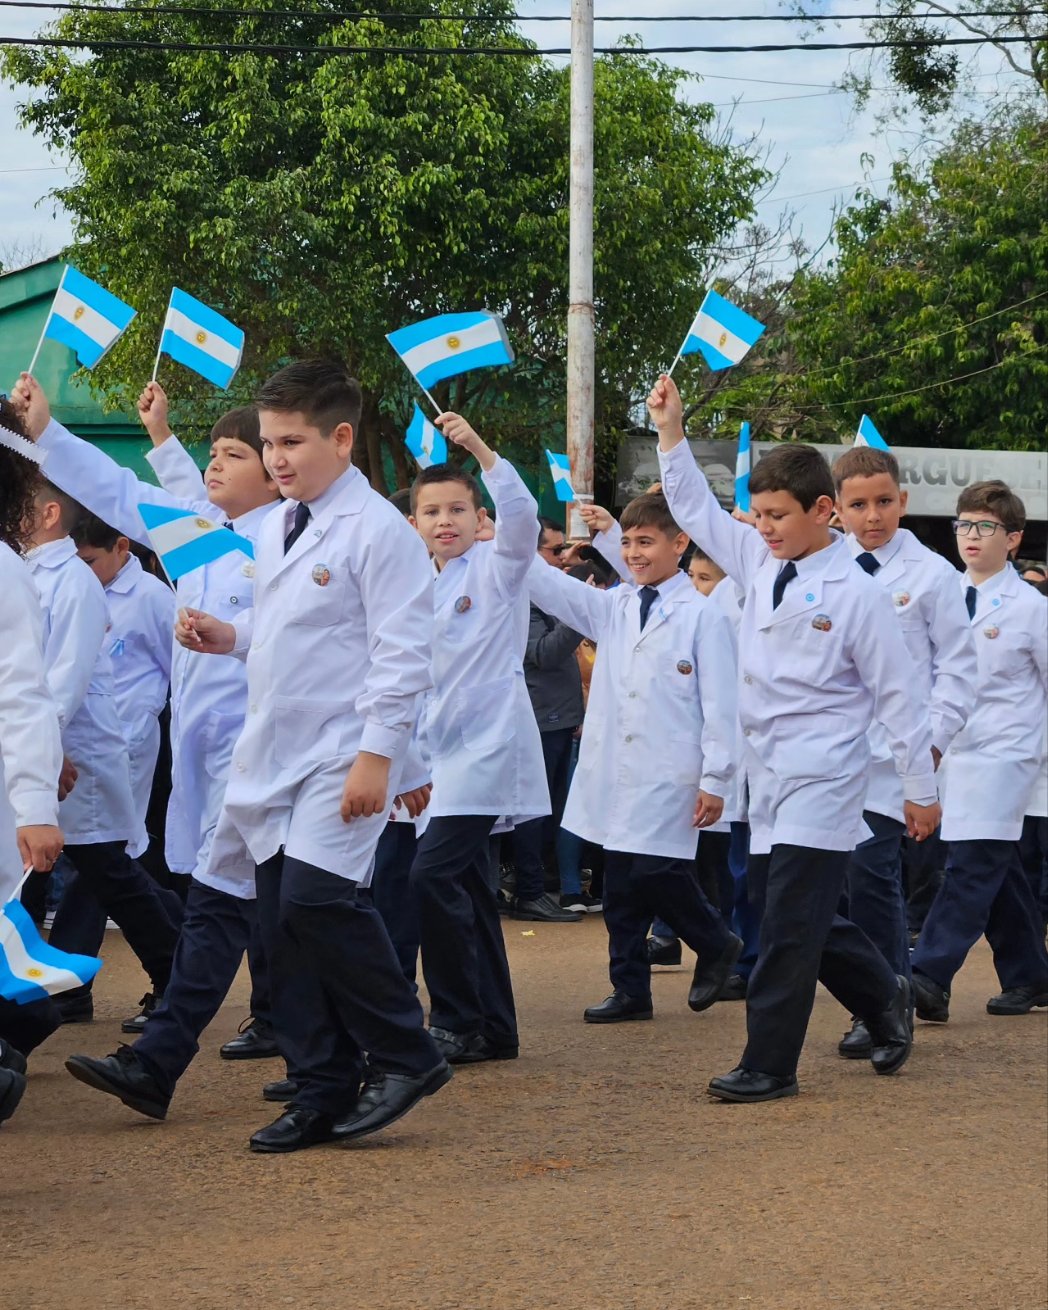 Día de la Bandera: "Belgrano fue el único prócer que pisó estas tierras, sus botas se tiñeron de tierra colorada", dijo Arce quien instó a los misioneros a seguir su legado imagen-12